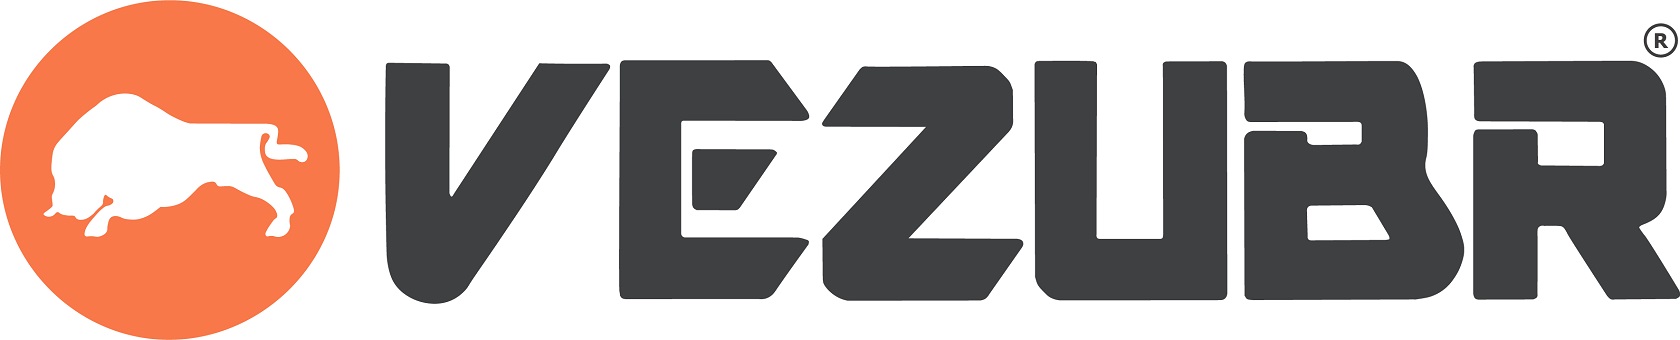 Официальный запуск нового агрегатора Vezubr намечен на март этого года